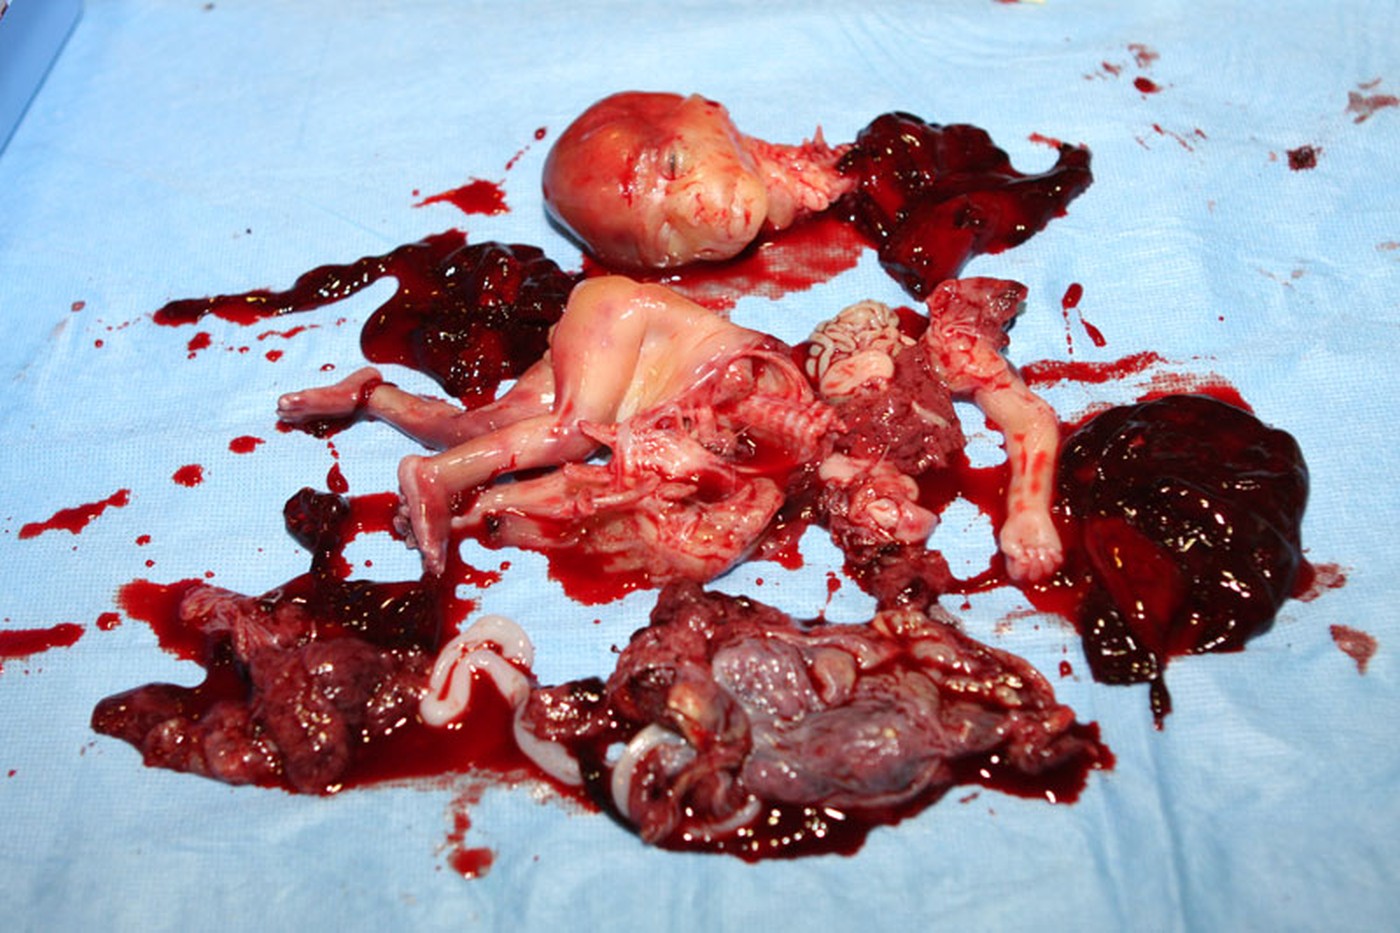 Położnik bez lukru, a może bez serca? Kaja Godek odpowiada zwolenniczce aborcji / foto ilustracyjne - aborcja w 27 tygodniu ciąży